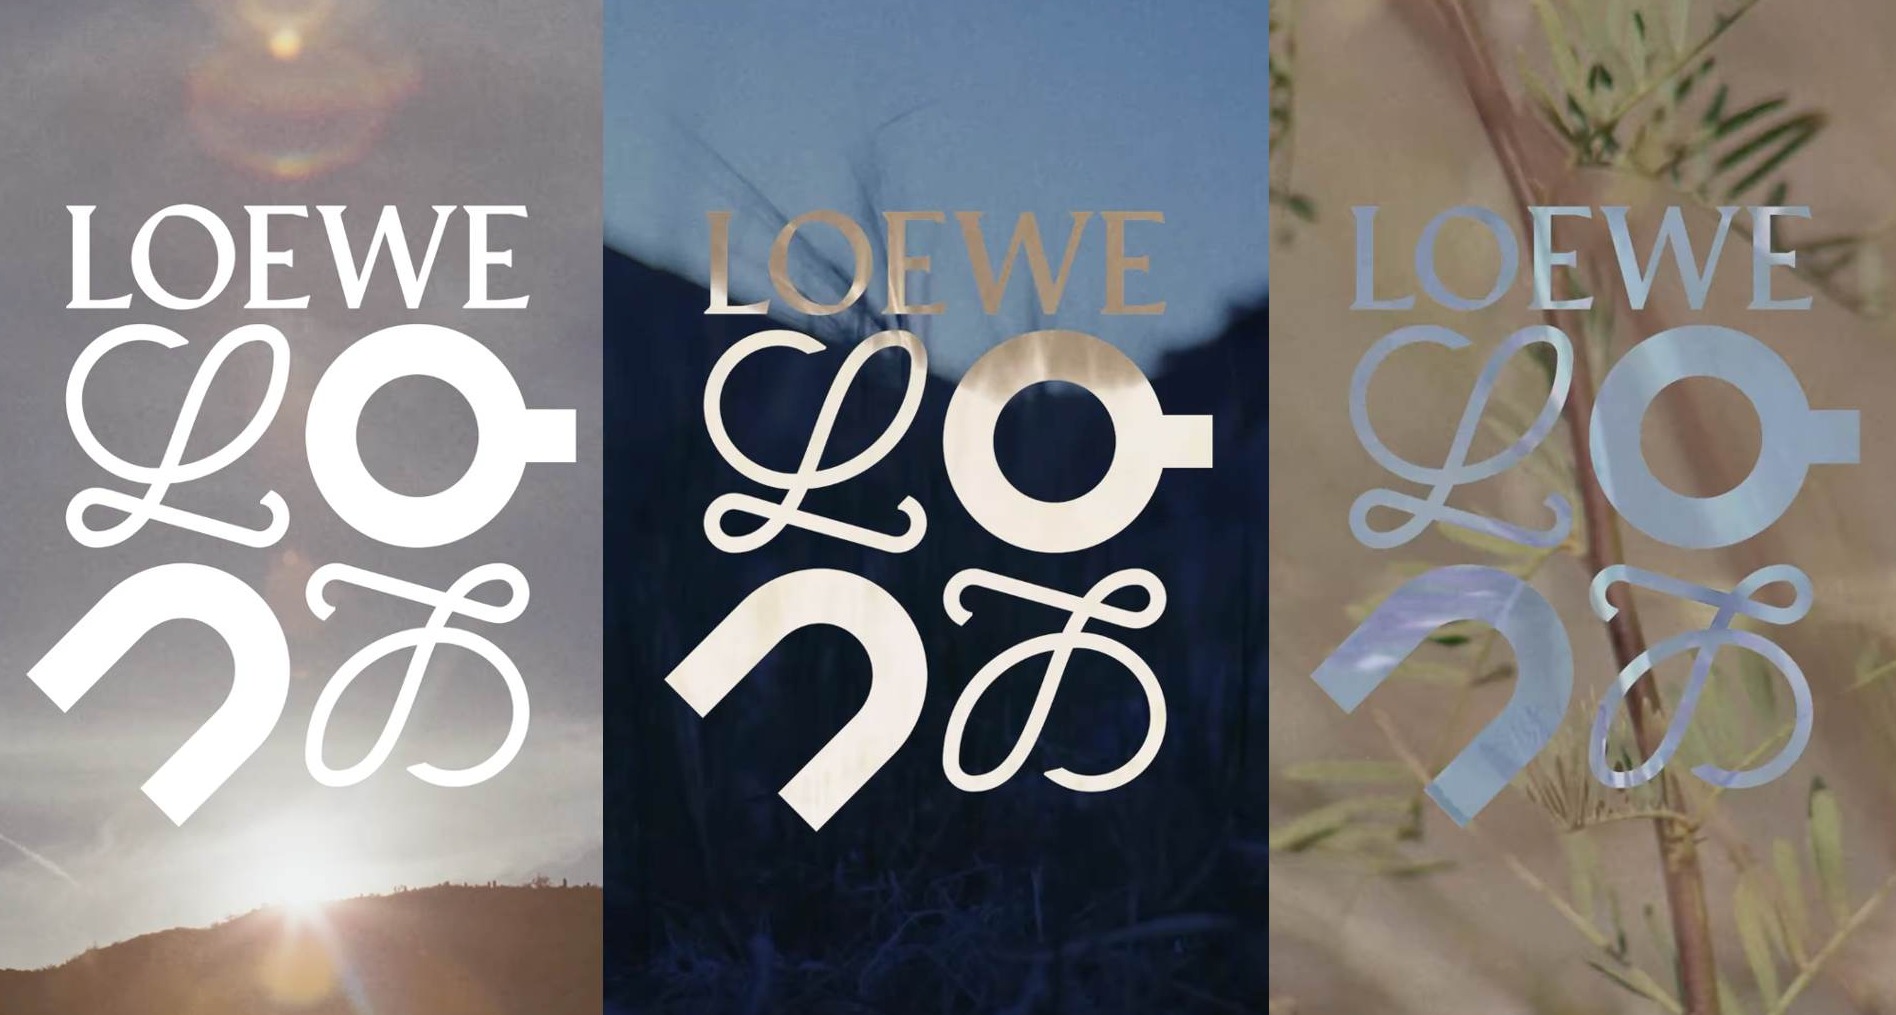 Logotipo de Loewe y On